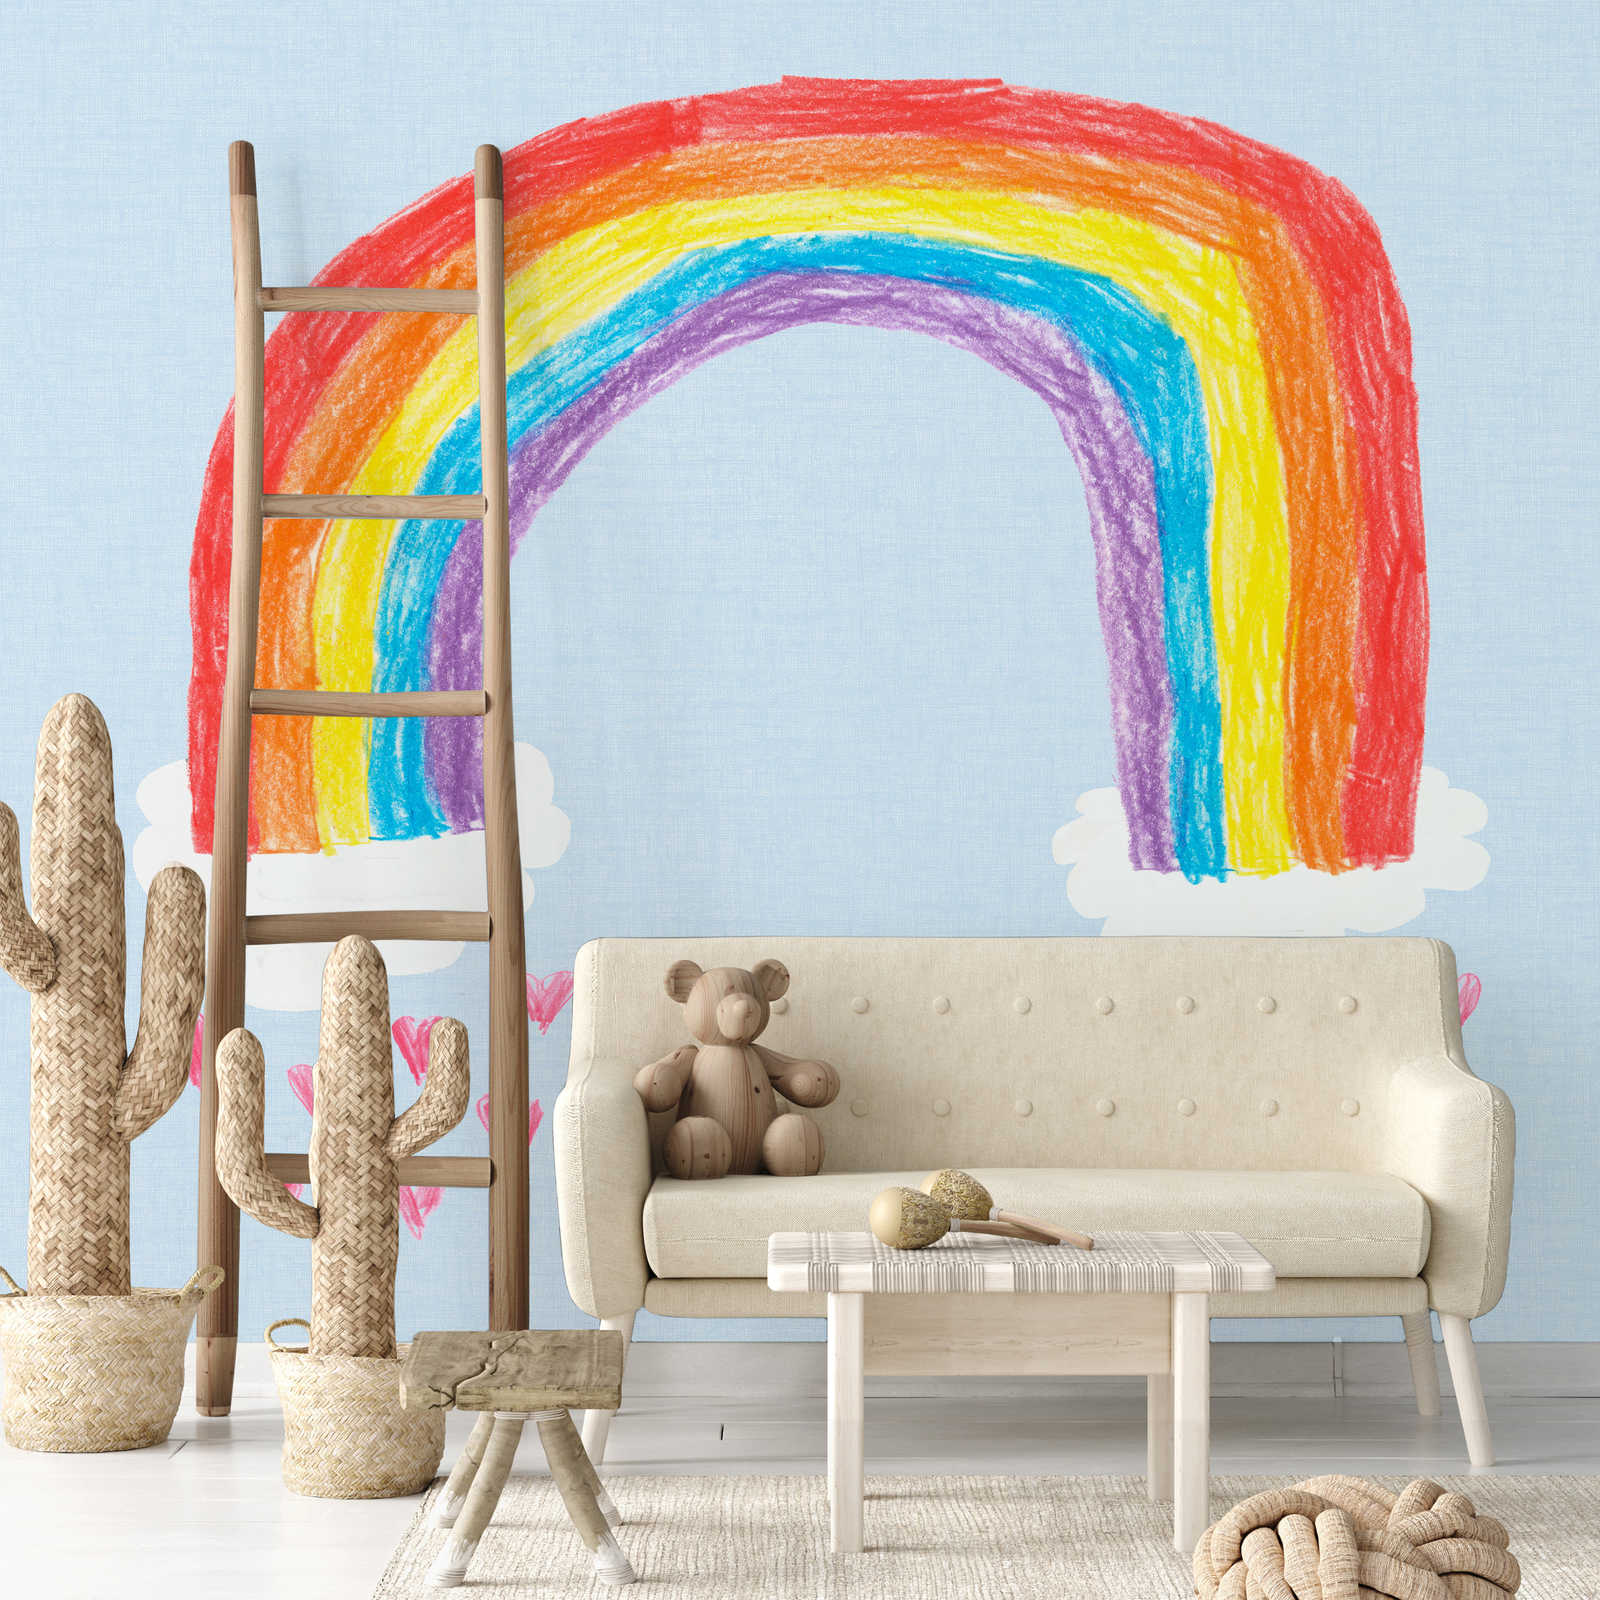             Papier peint panoramique arc-en-ciel peint par soi-même pour chambre d'enfant
        